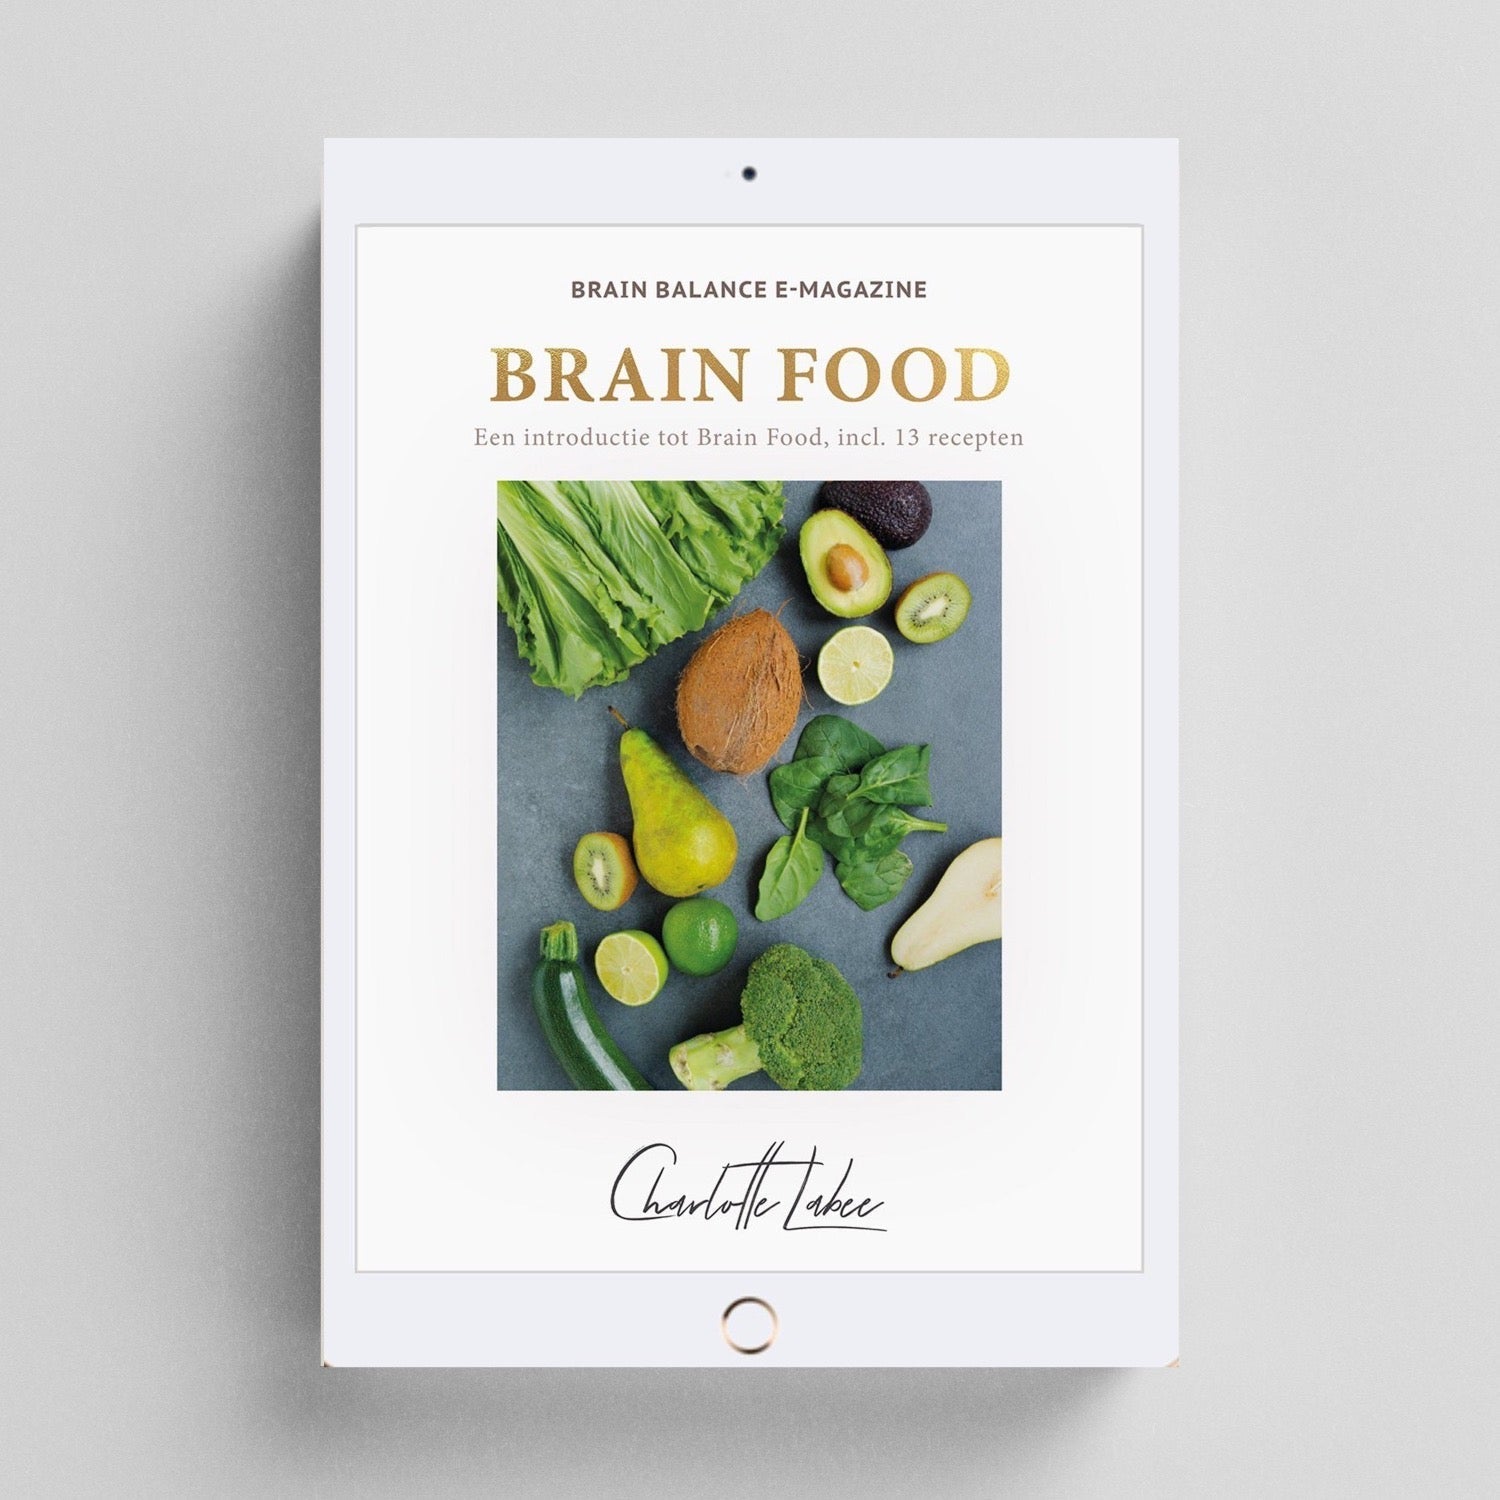 Brain Food Books on Instagram: @brainfoodbooks_tke and